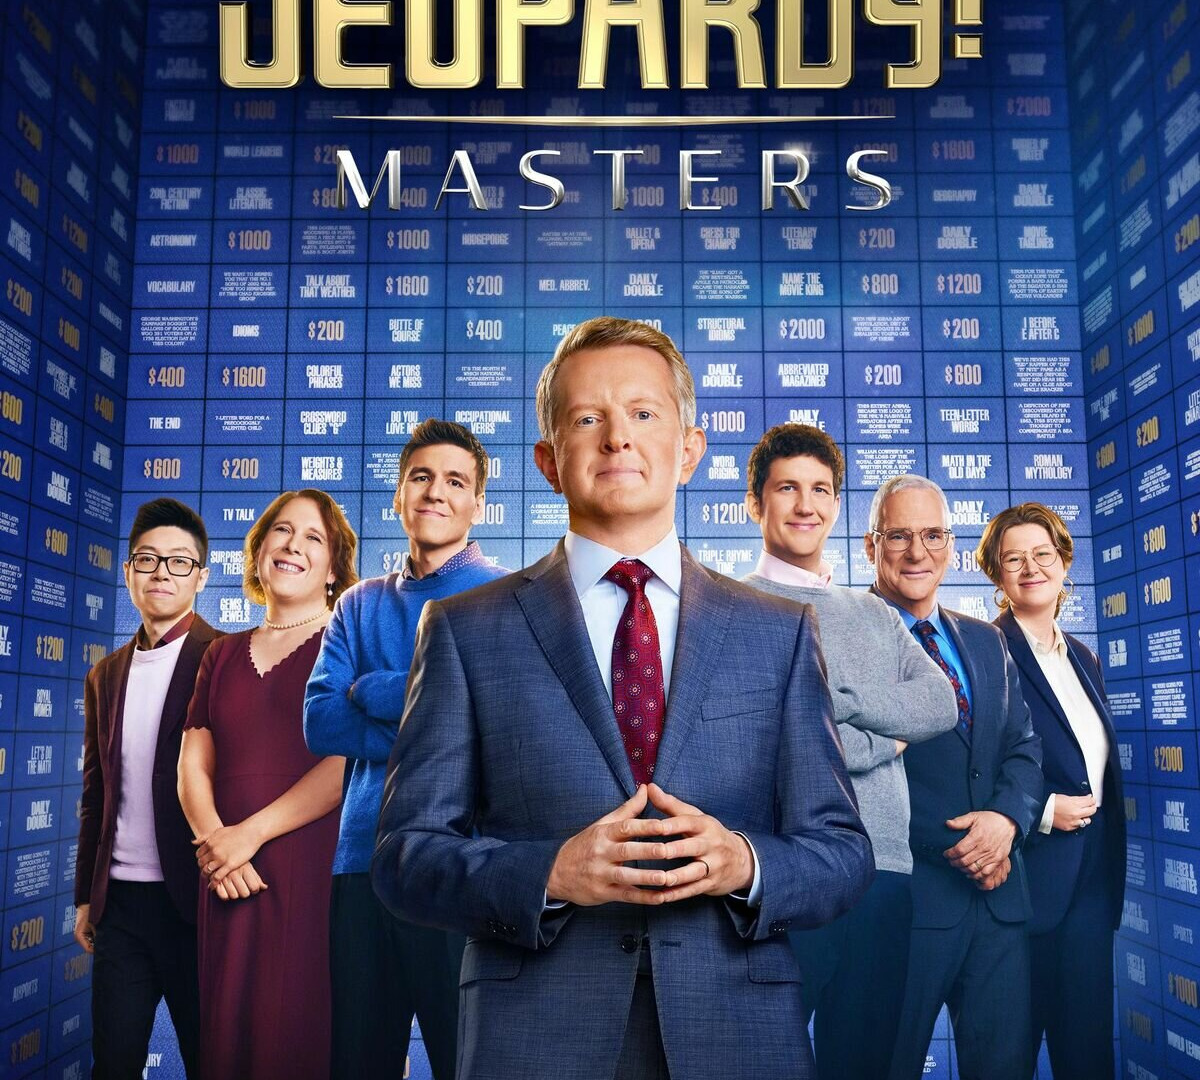 Show Jeopardy! Masters